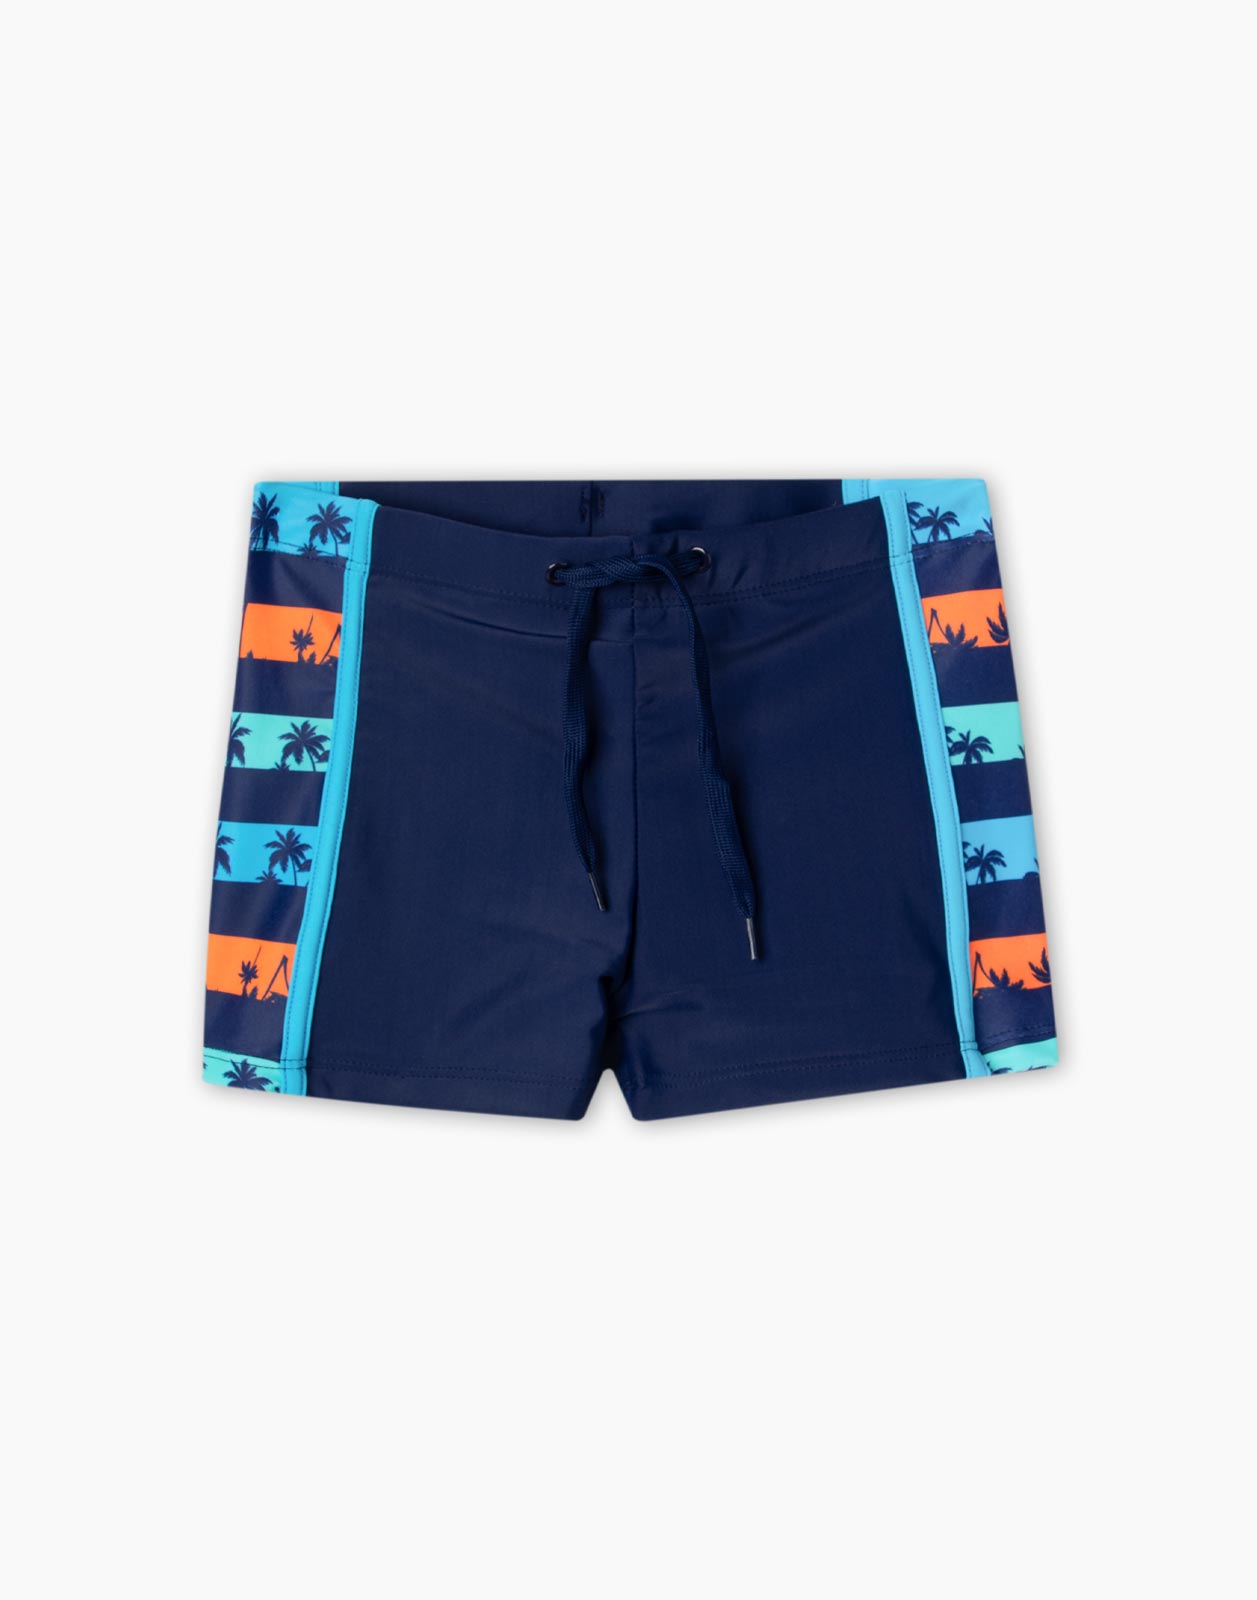 Пляжные плавательные шорты с принтом для мальчика р.128